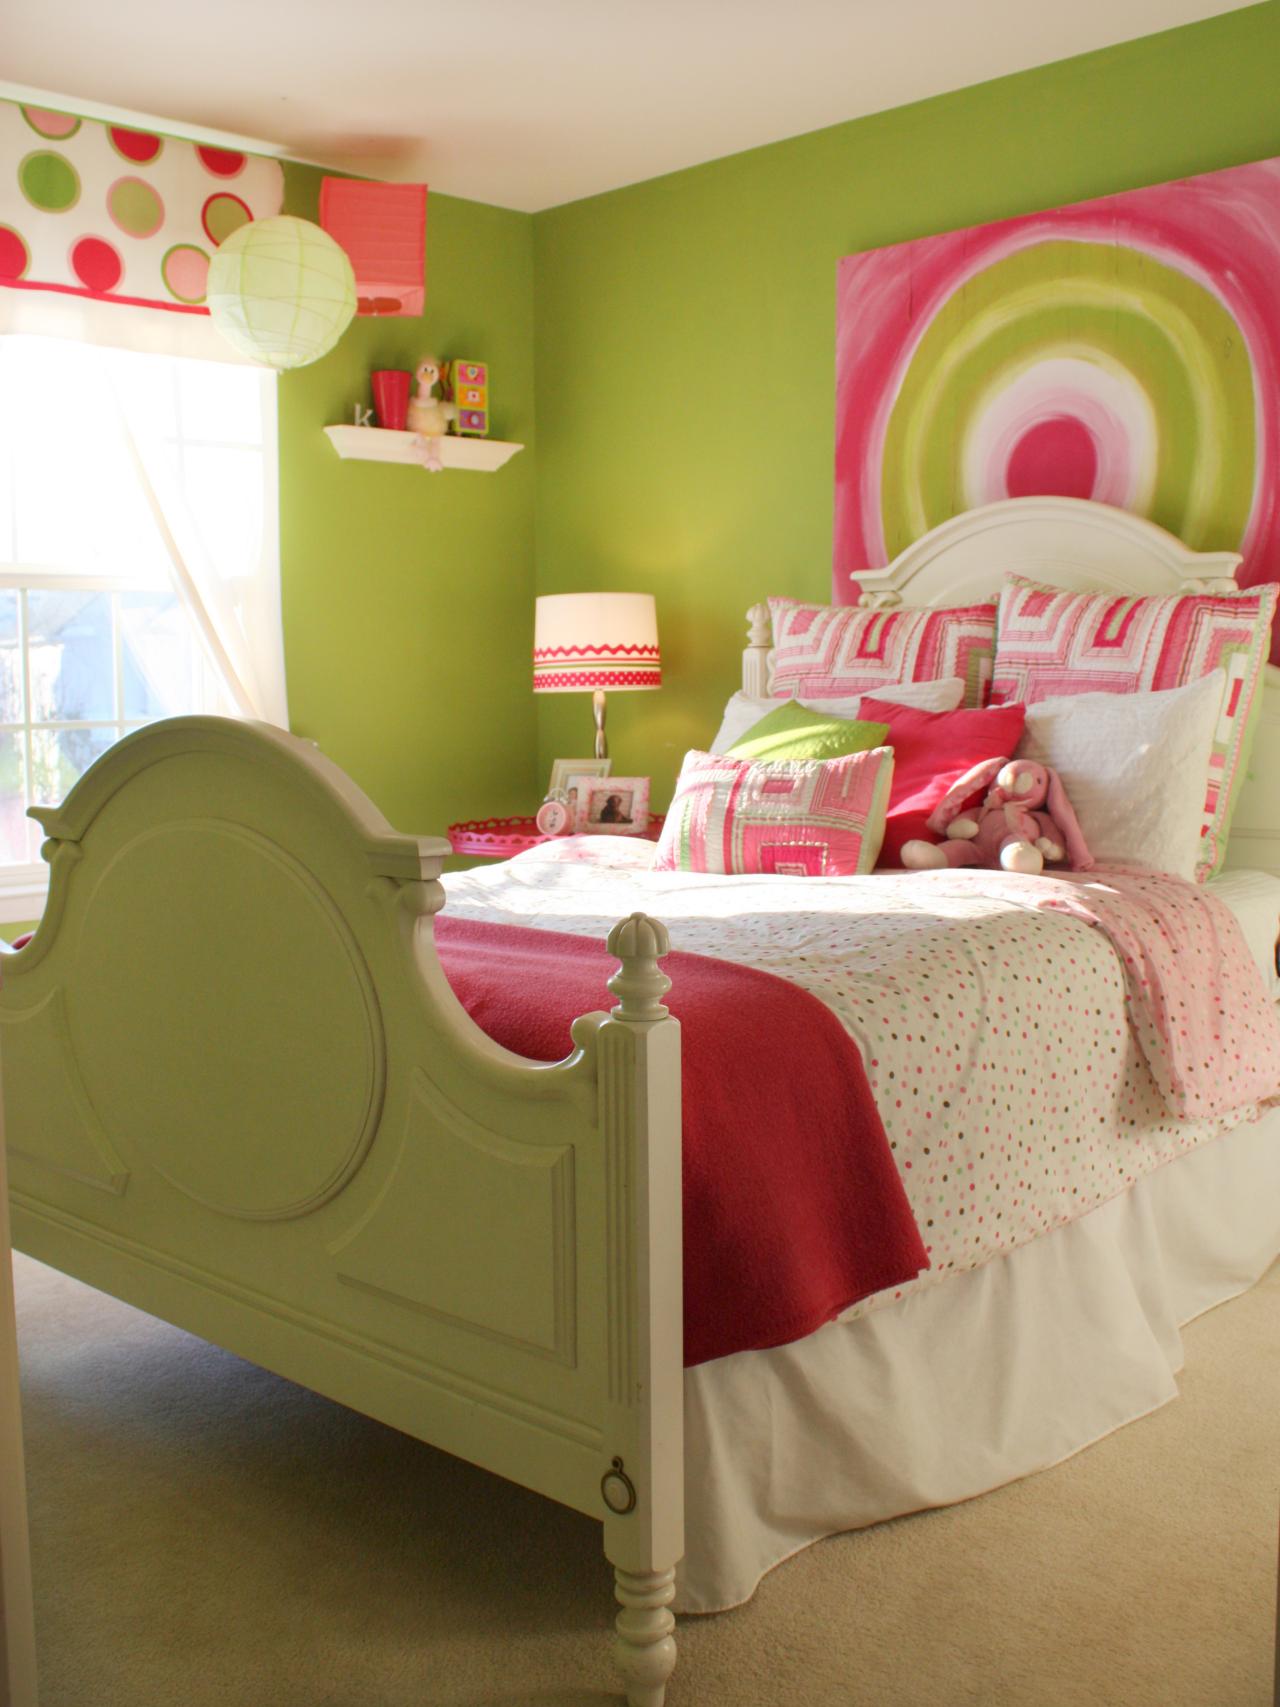 peinture chambre enfant lit dessin murs verts draps colorés design couleurs pastel peinture chambre enfant 